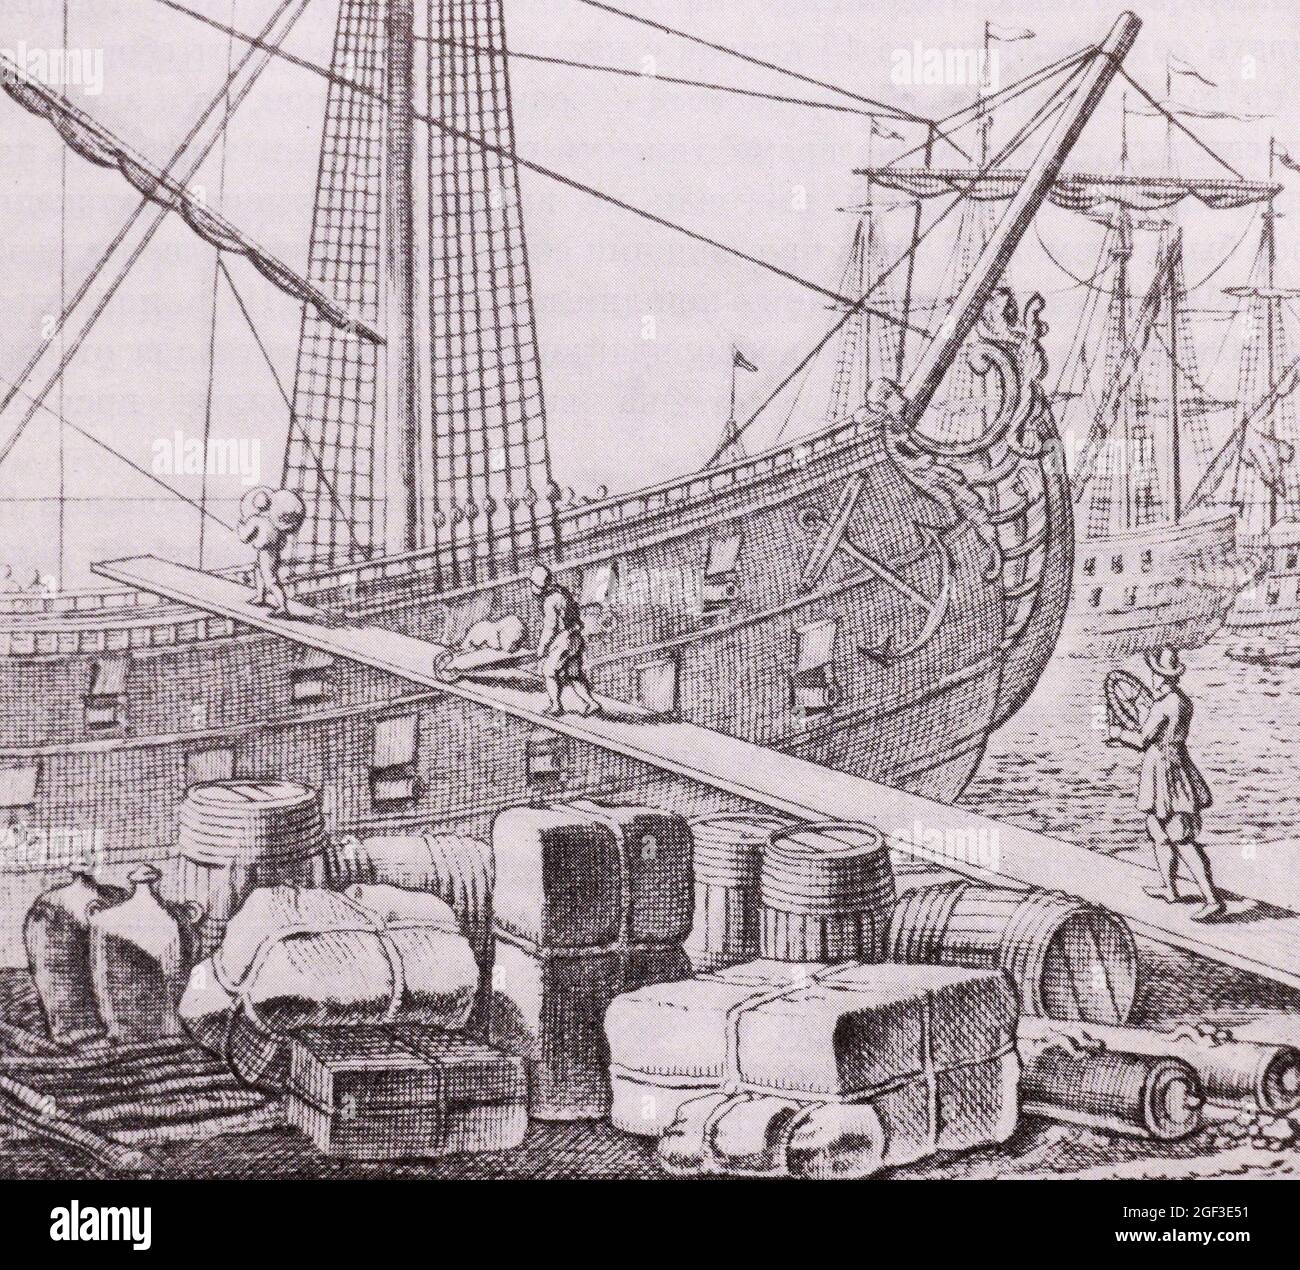 Déchargement de navires étrangers à Arkhangelsk. La gravure du XVIIIe siècle. Banque D'Images